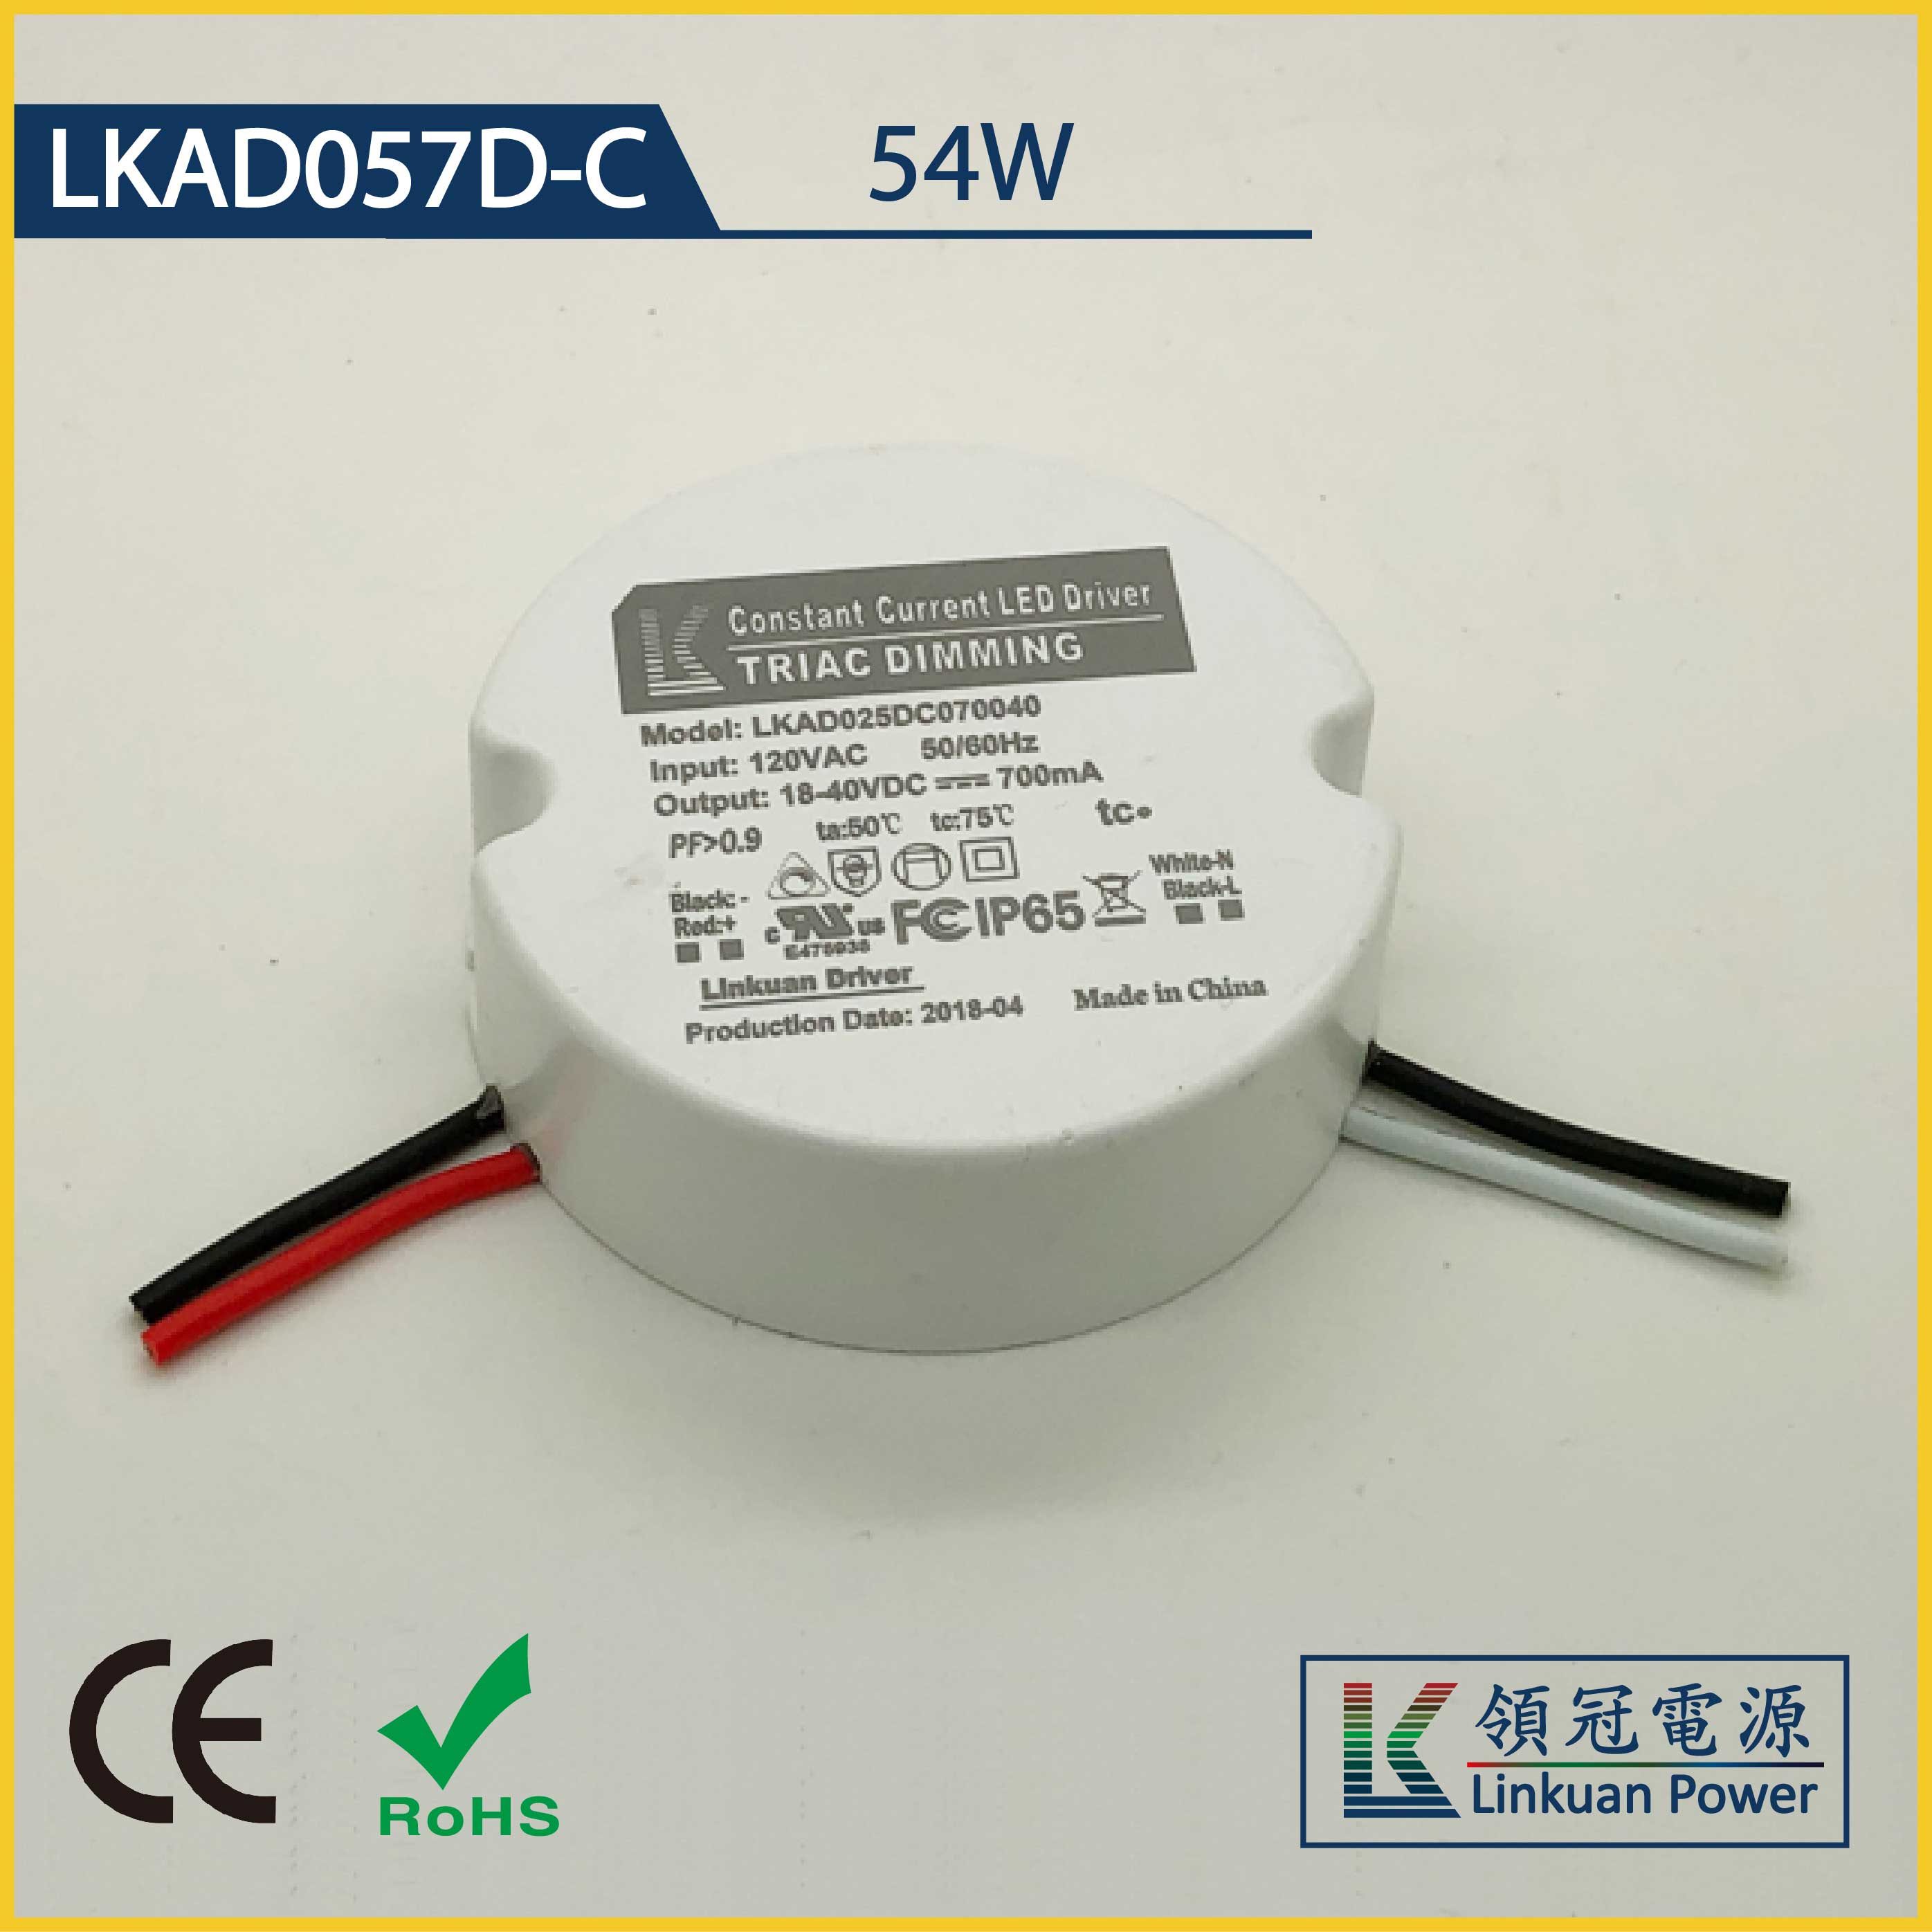 LKAD057D-C 54W 5-42V 1200mA 0-10V Dimming LED drivers